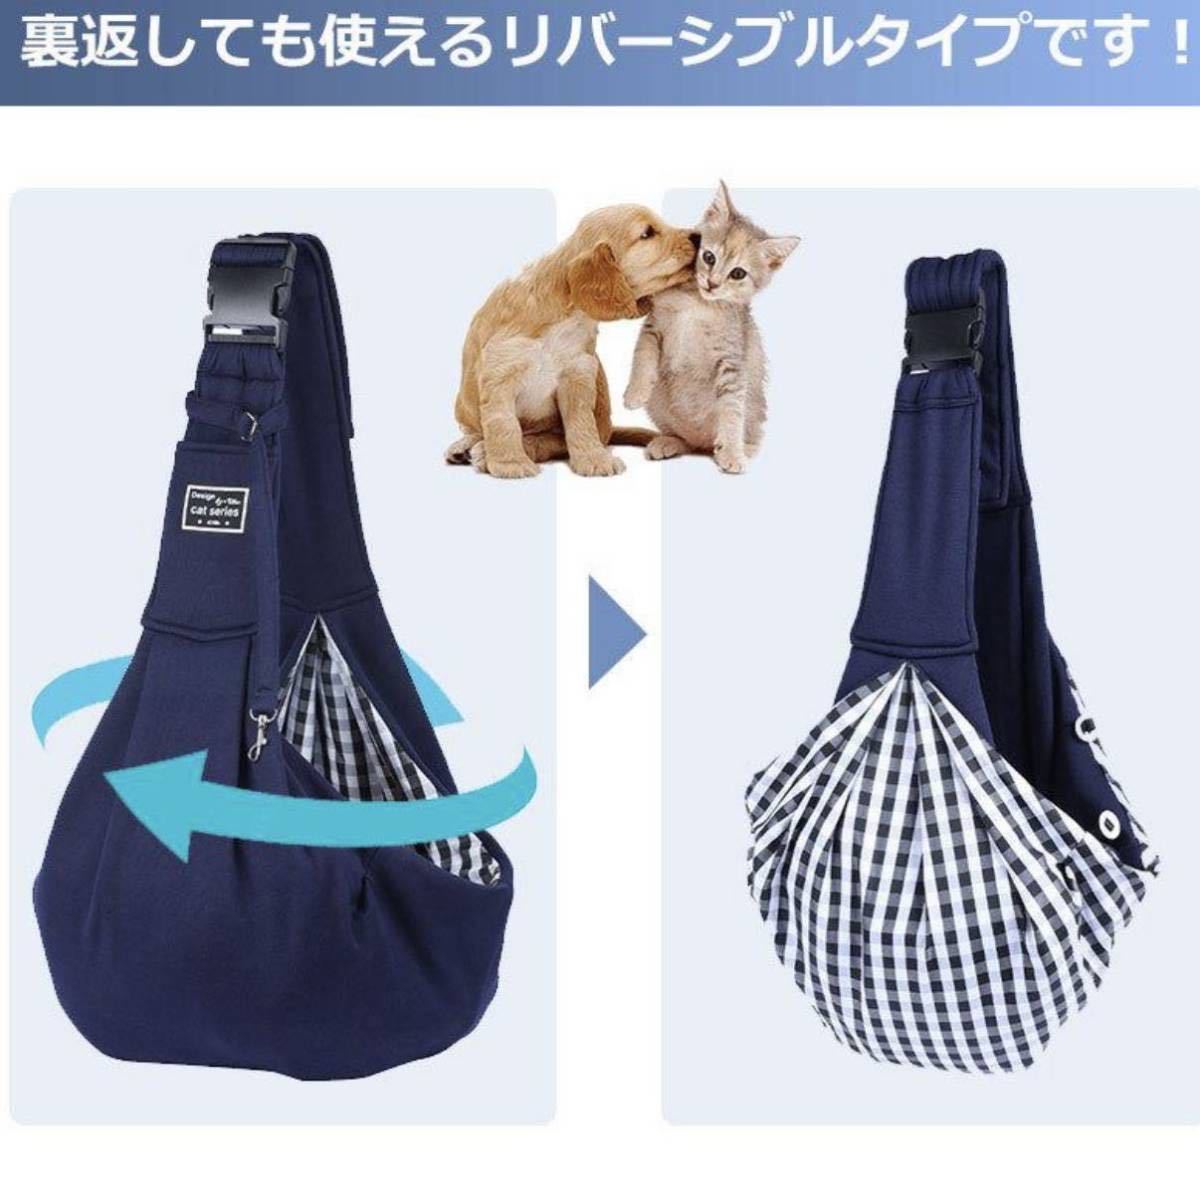  темно-синий пряжка имеется домашнее животное sling дорожная сумка собака кошка ... шнурок сумка на плечо 